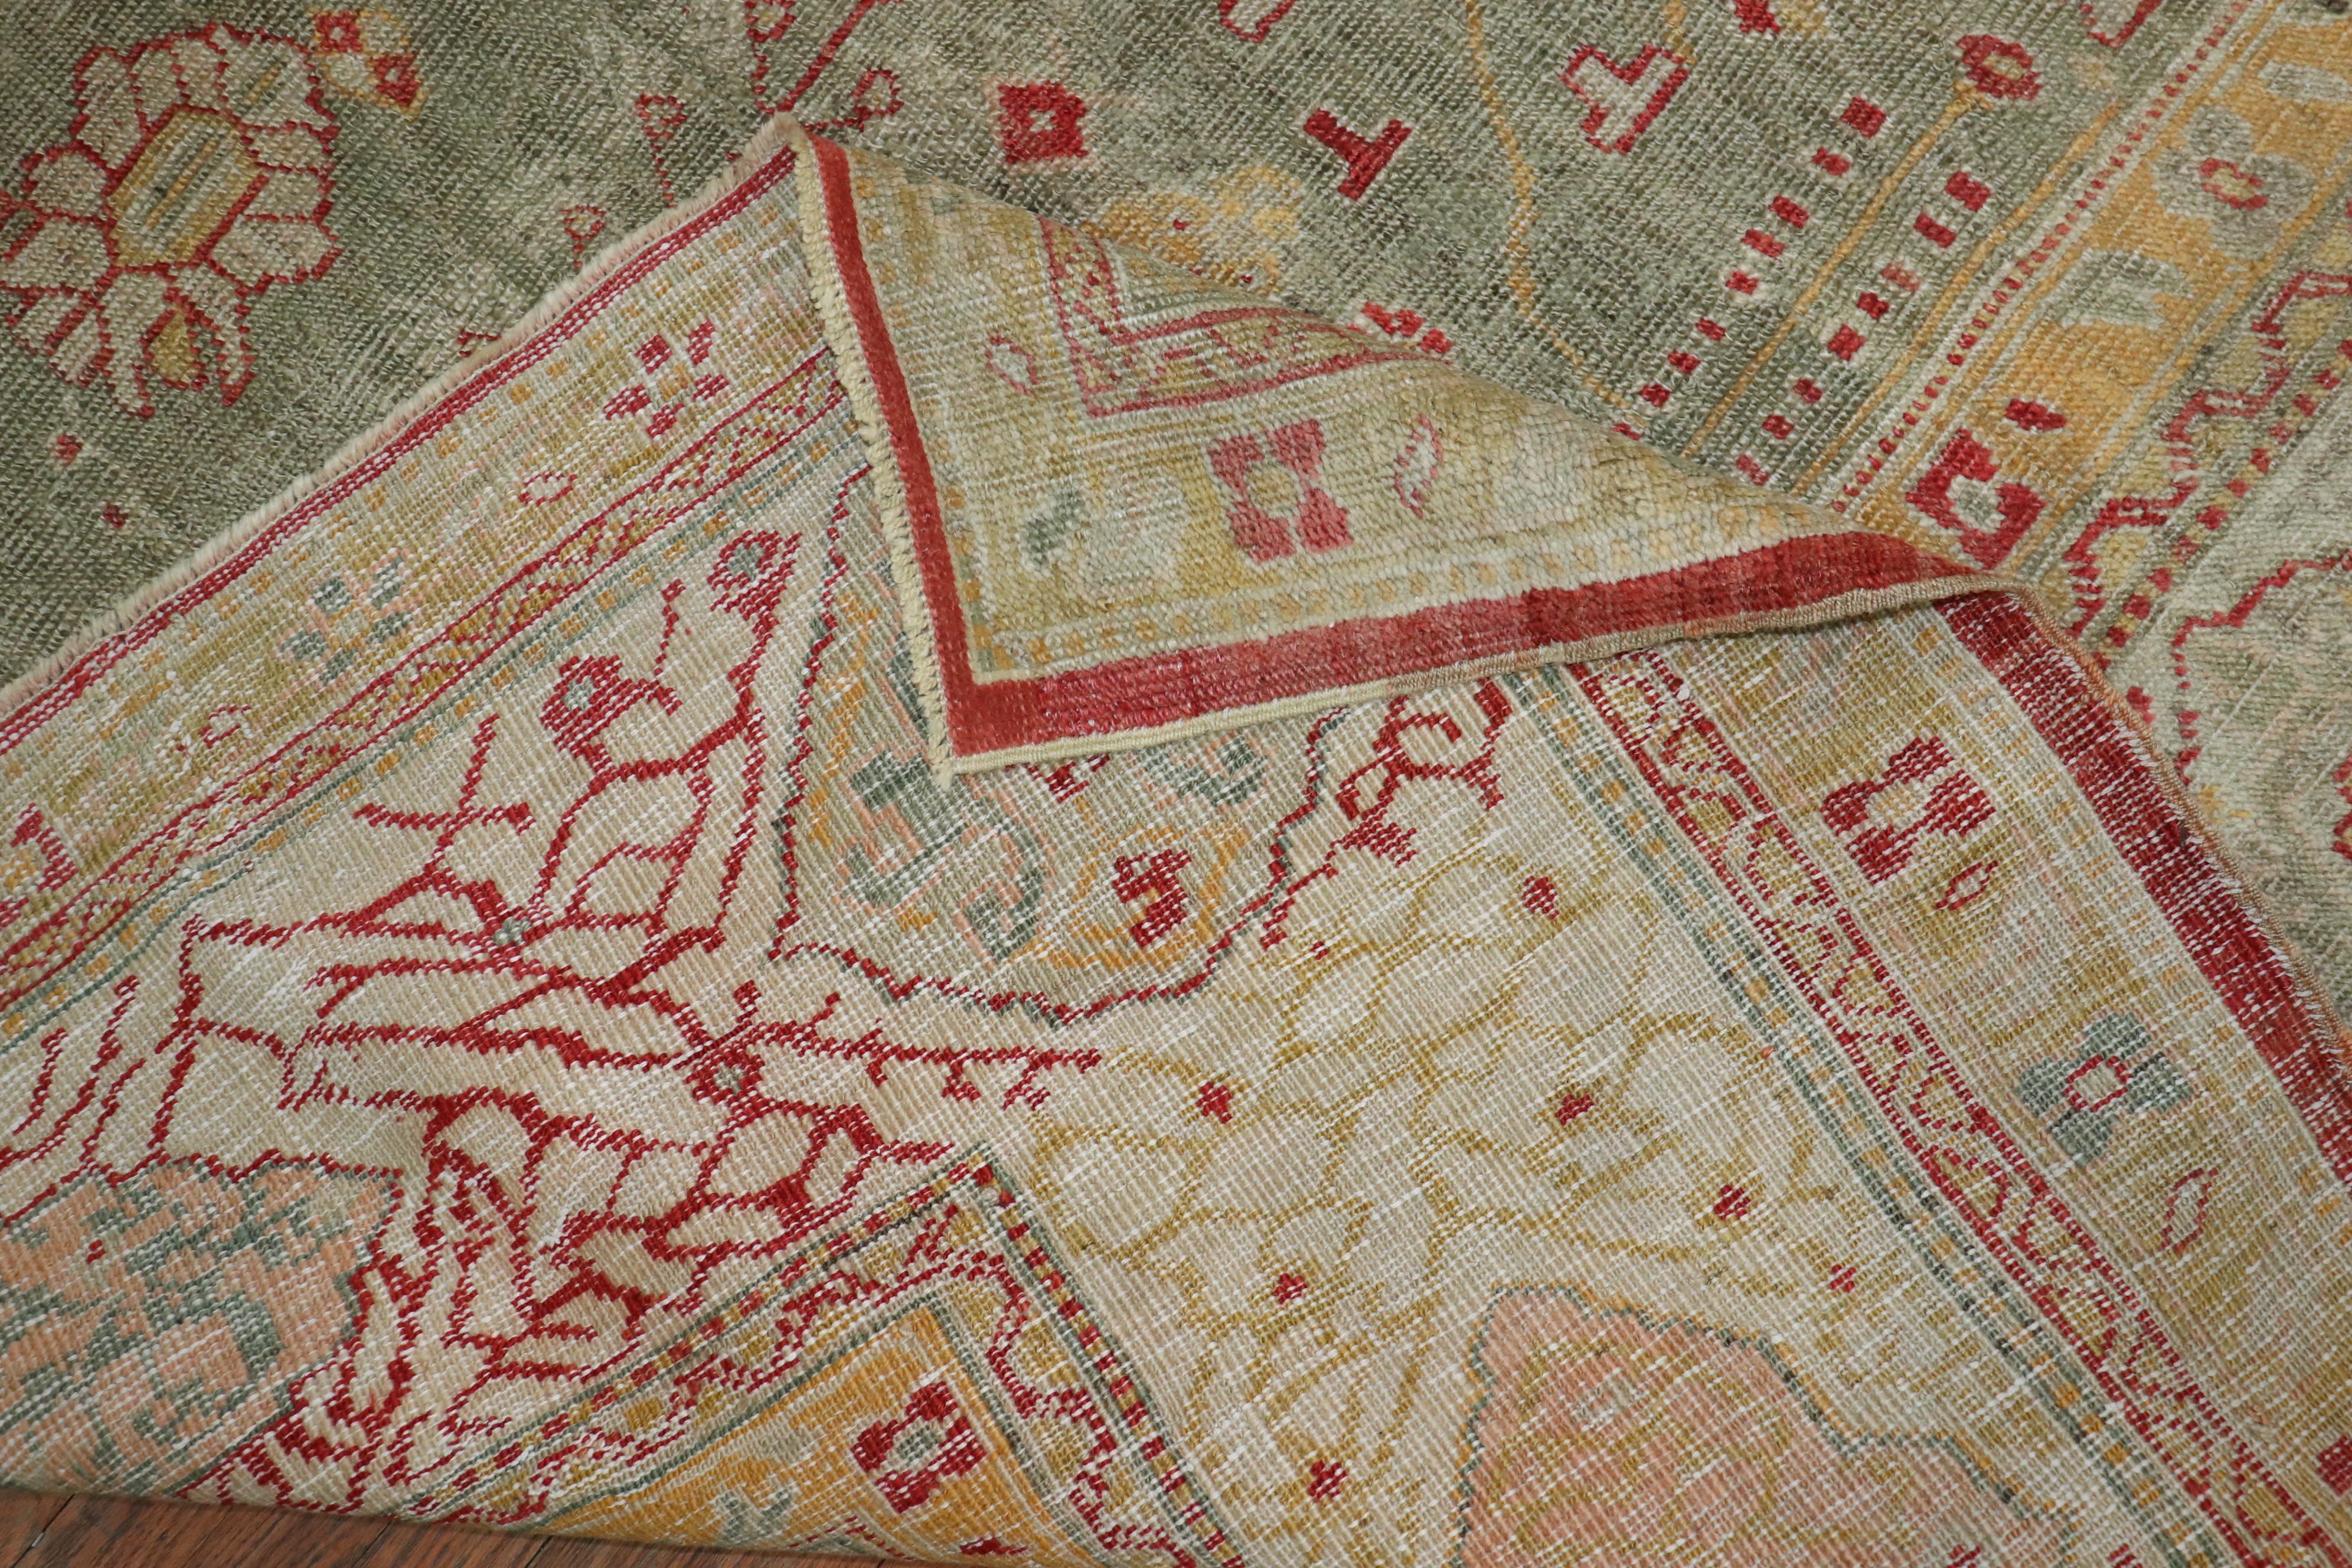 Ein authentischer, handgefertigter, antiker türkischer Oushak-Teppich aus dem späten 19. Jahrhundert mit zeladongrünem Feld, elfenbeinfarbenem Zentralmedaillon und Bordüre. Akzente in Hellgelb und einem orangeroten Farbton.

Maße: 12'10